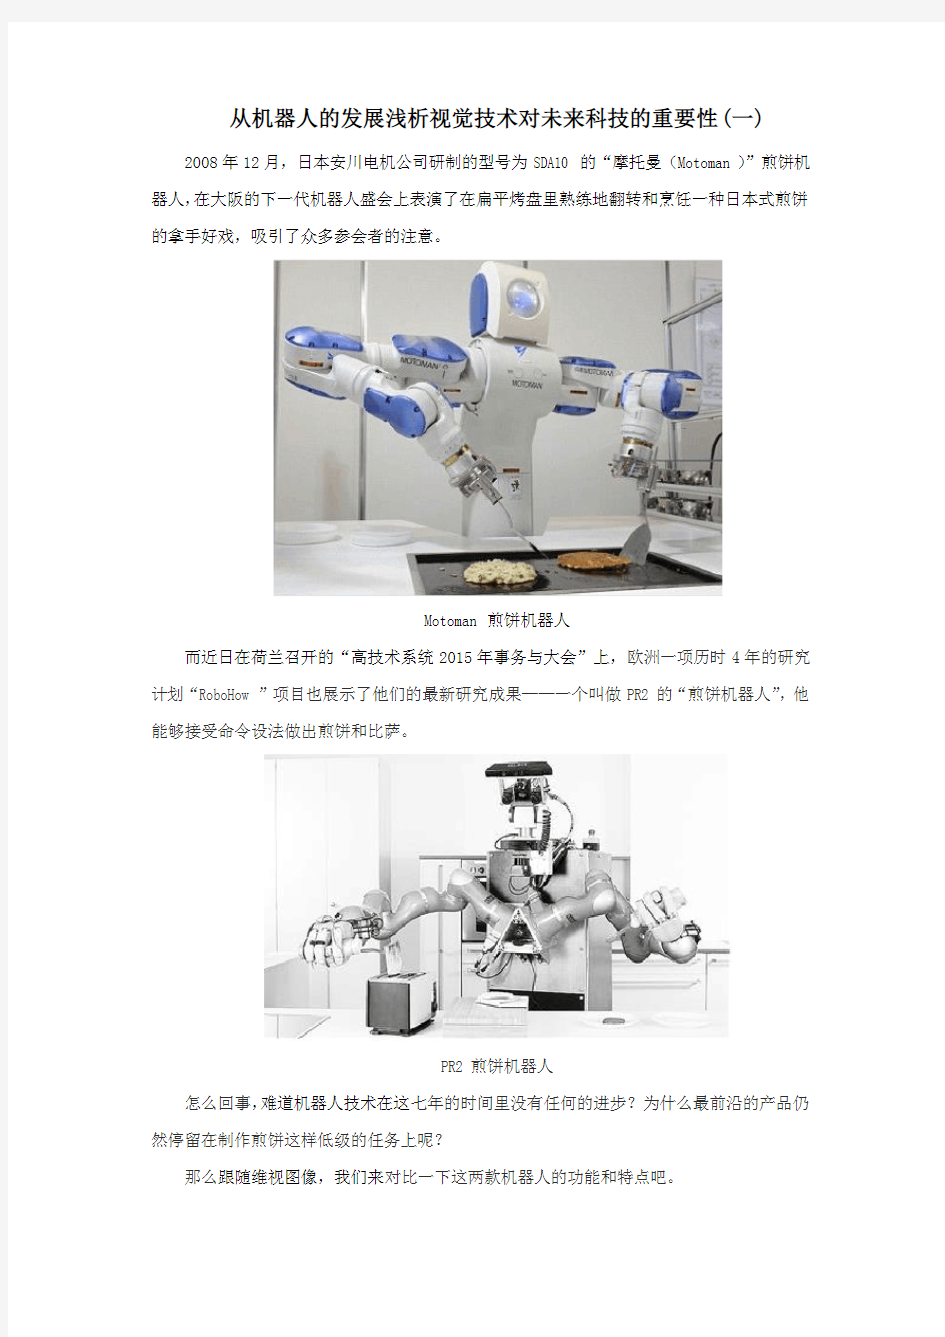 从机器人的发展浅析视觉技术对未来科技的重要性(一)